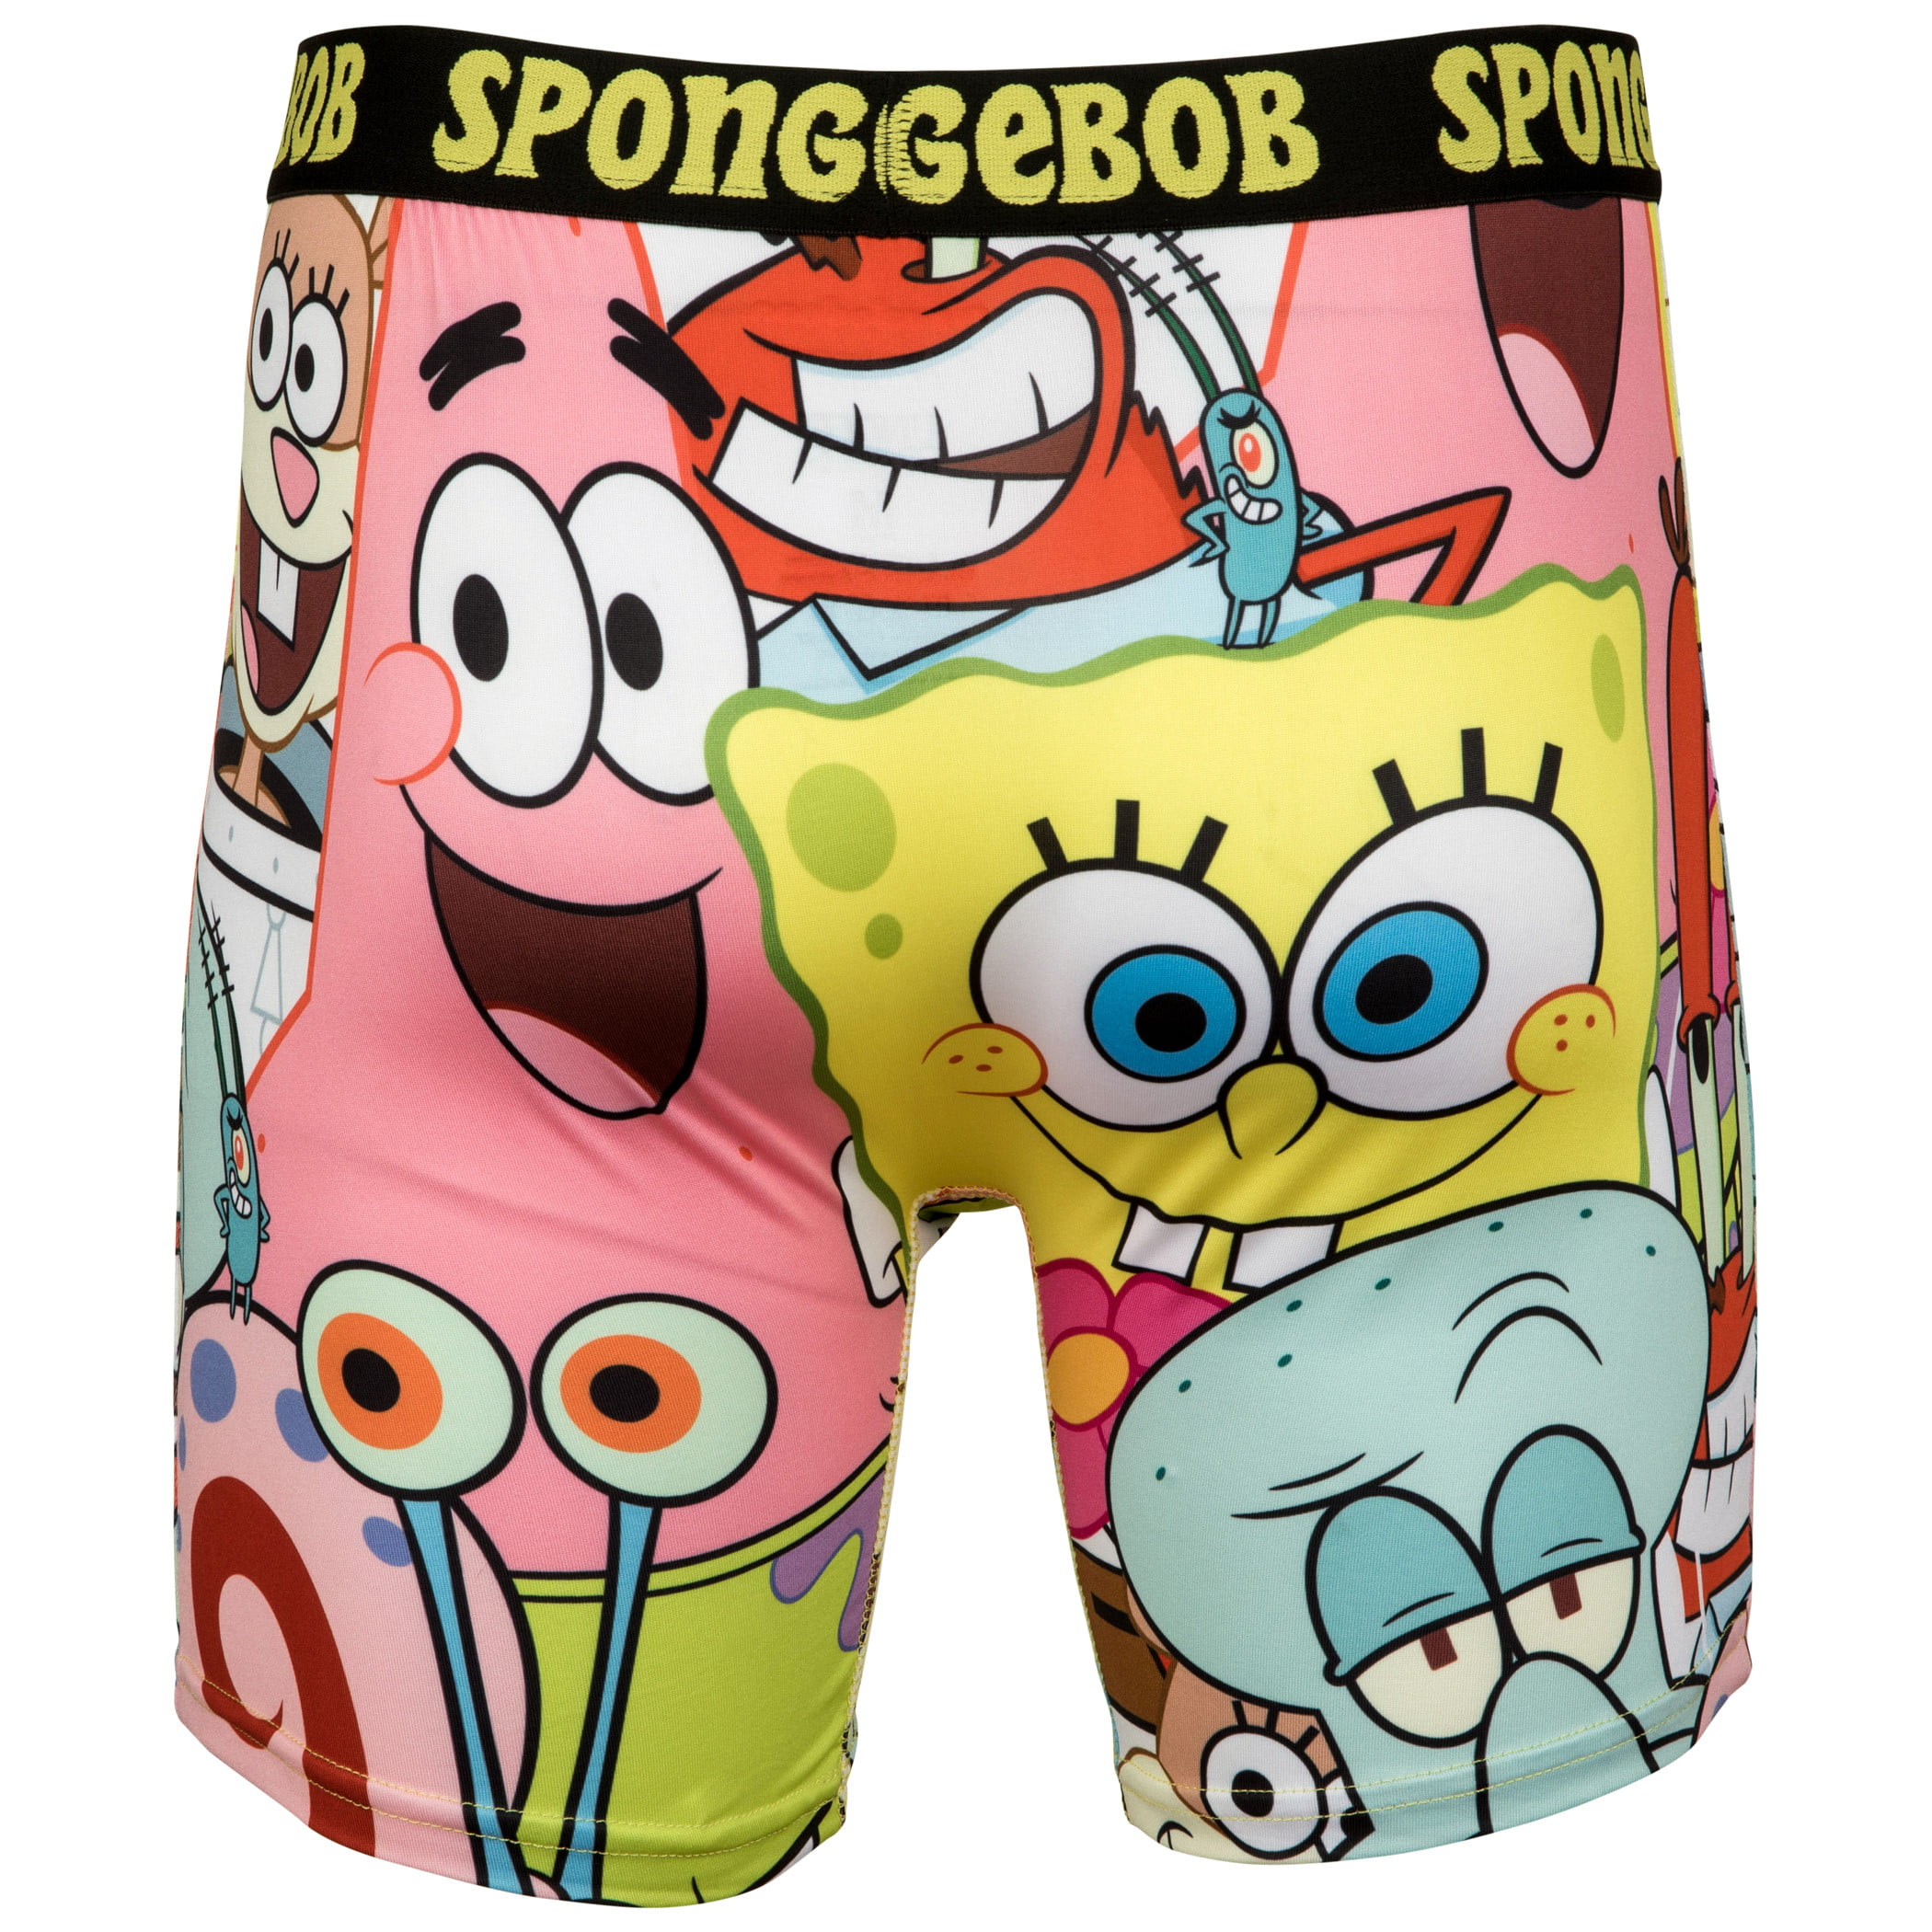 Just spongebob in underwear by ZayaWaya on DeviantArt